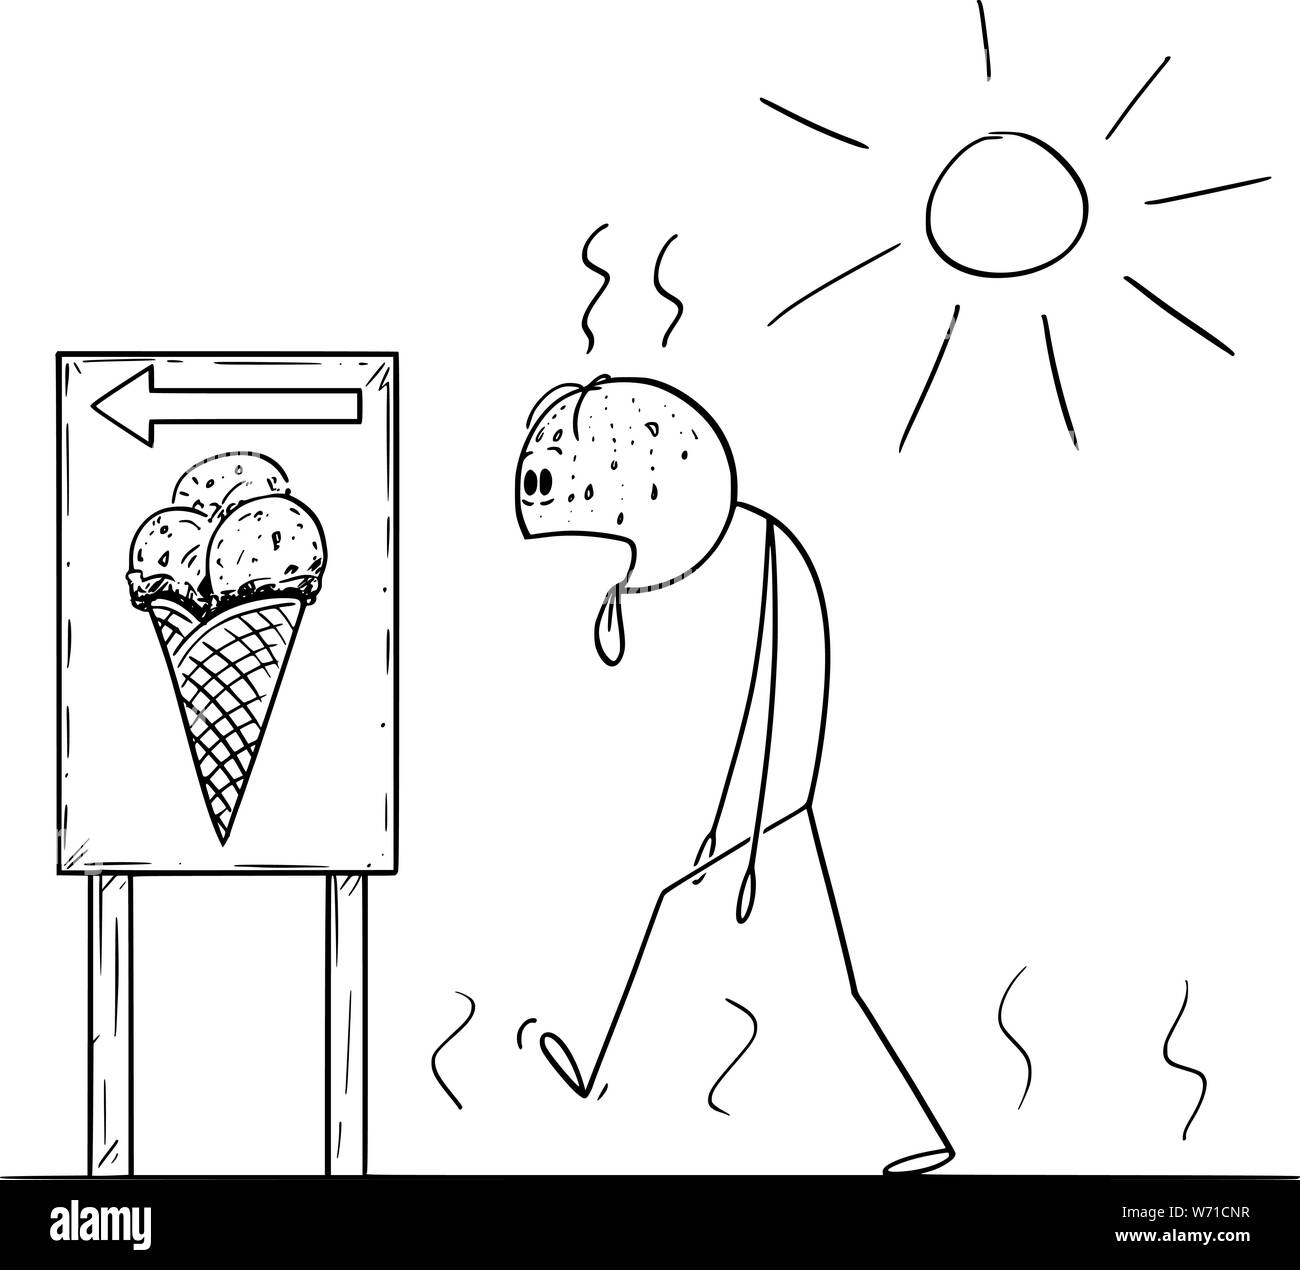 Vector cartoon stick figura disegno illustrazione concettuale di esaurito uomo a camminare nella giornata di sole in estate per comprare il gelato con la linguetta che si stravacca fuori. Illustrazione Vettoriale